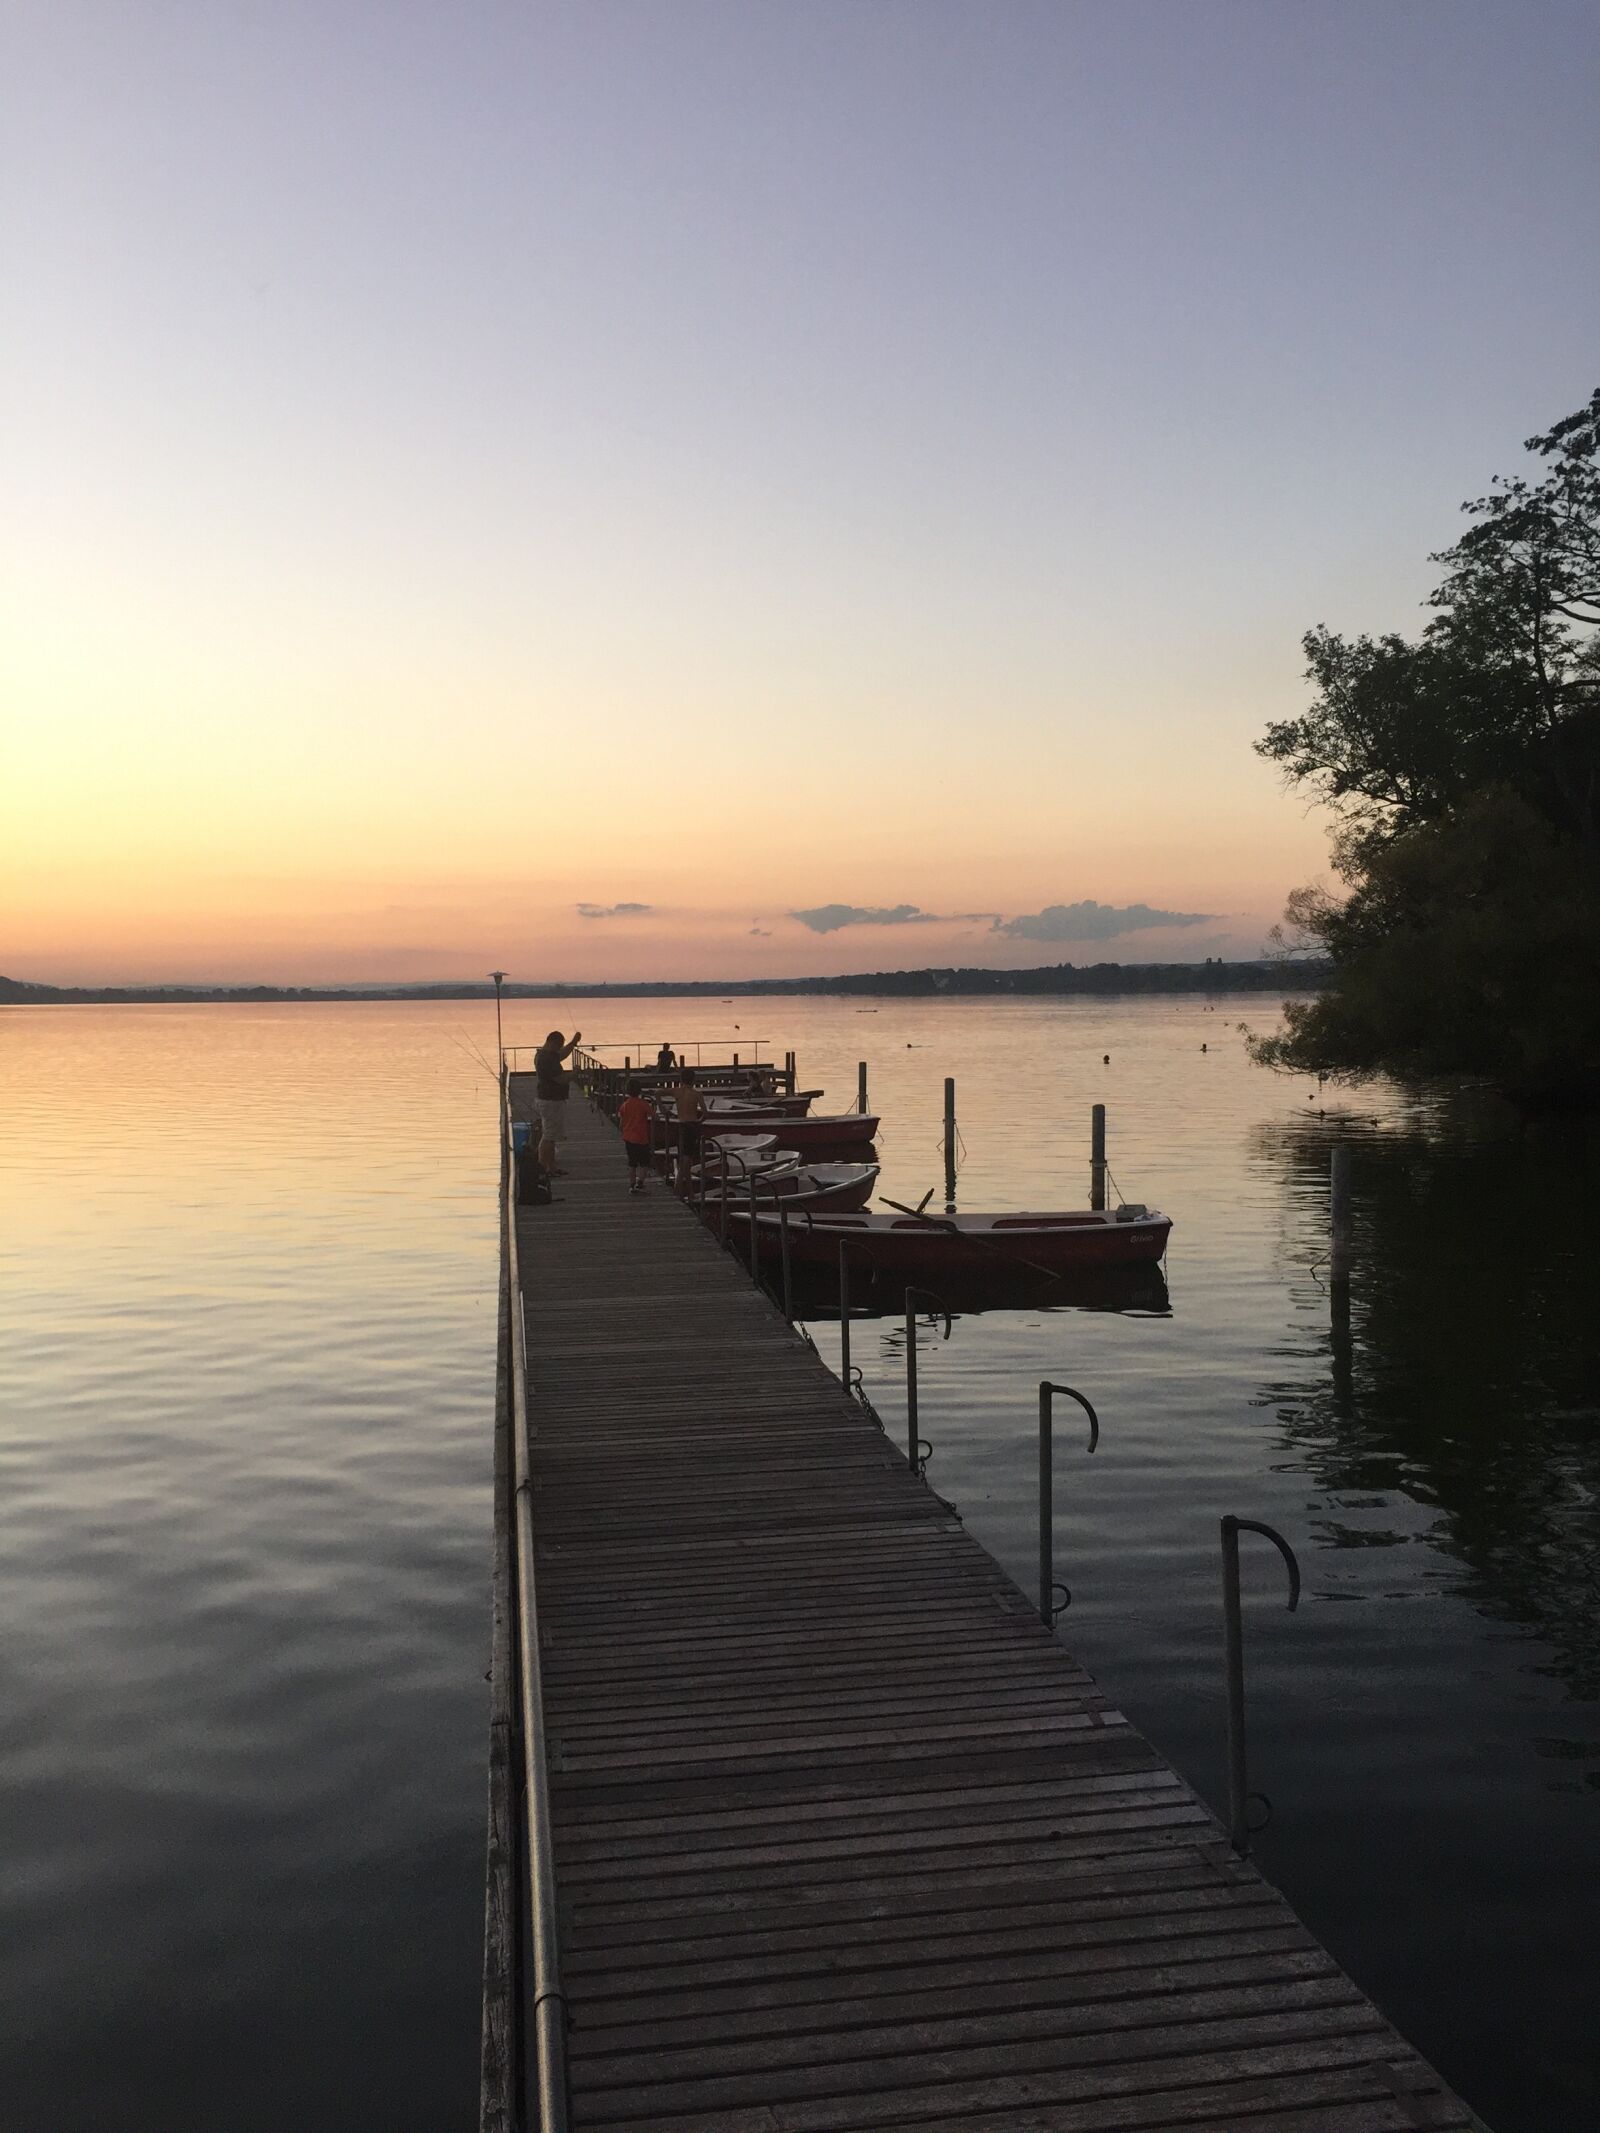 Apple iPhone 6 sample photo. Lake zurich, dusk, switzerland photography